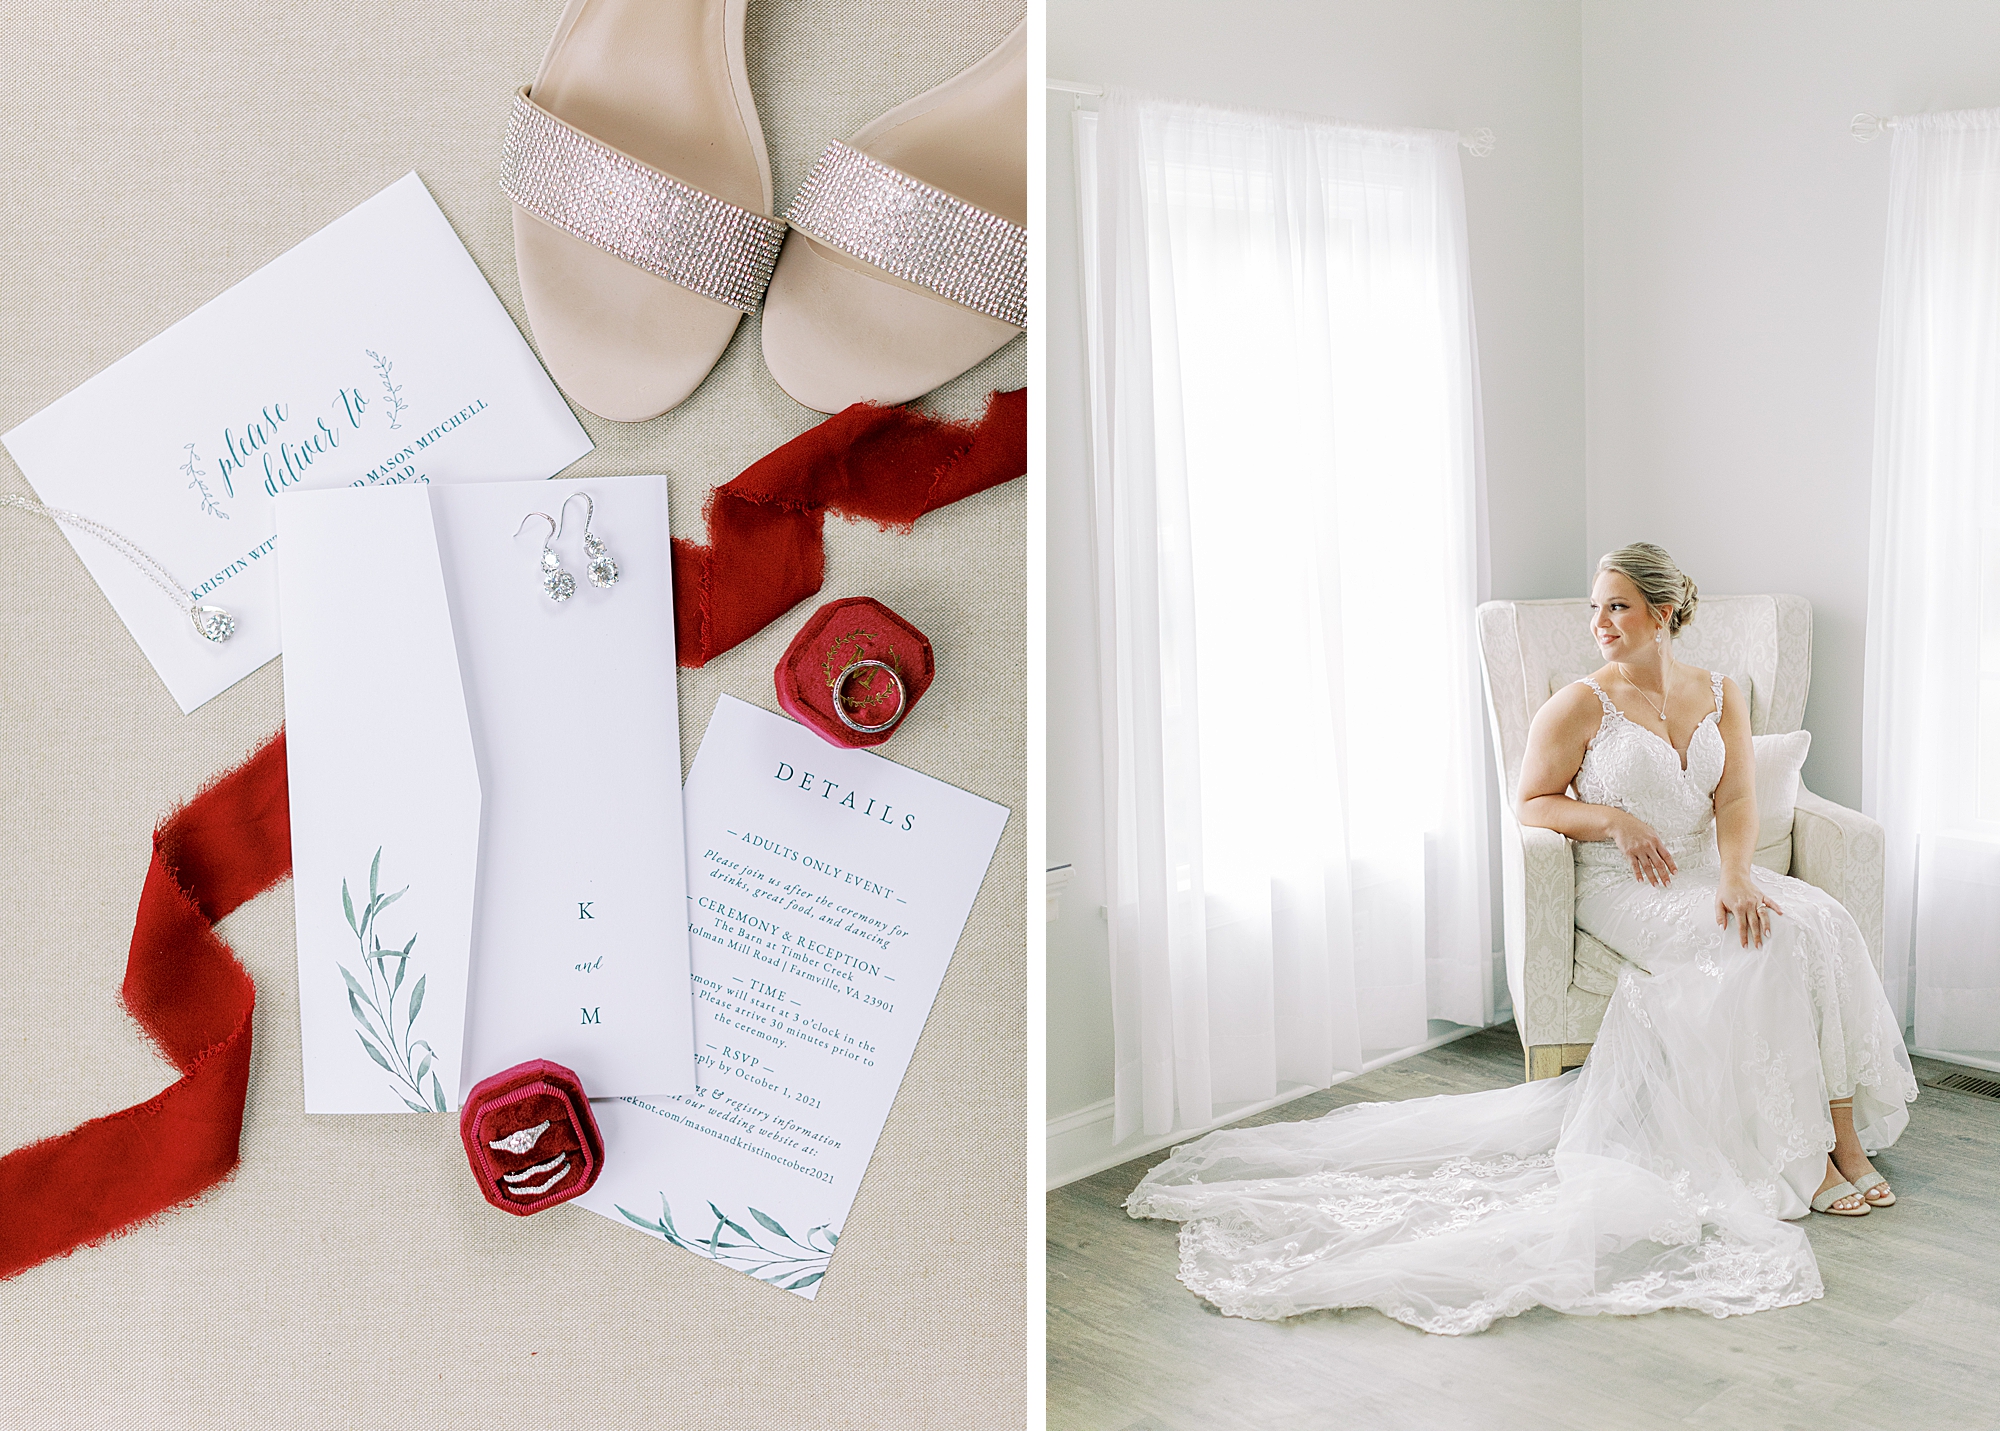 Bridal details.